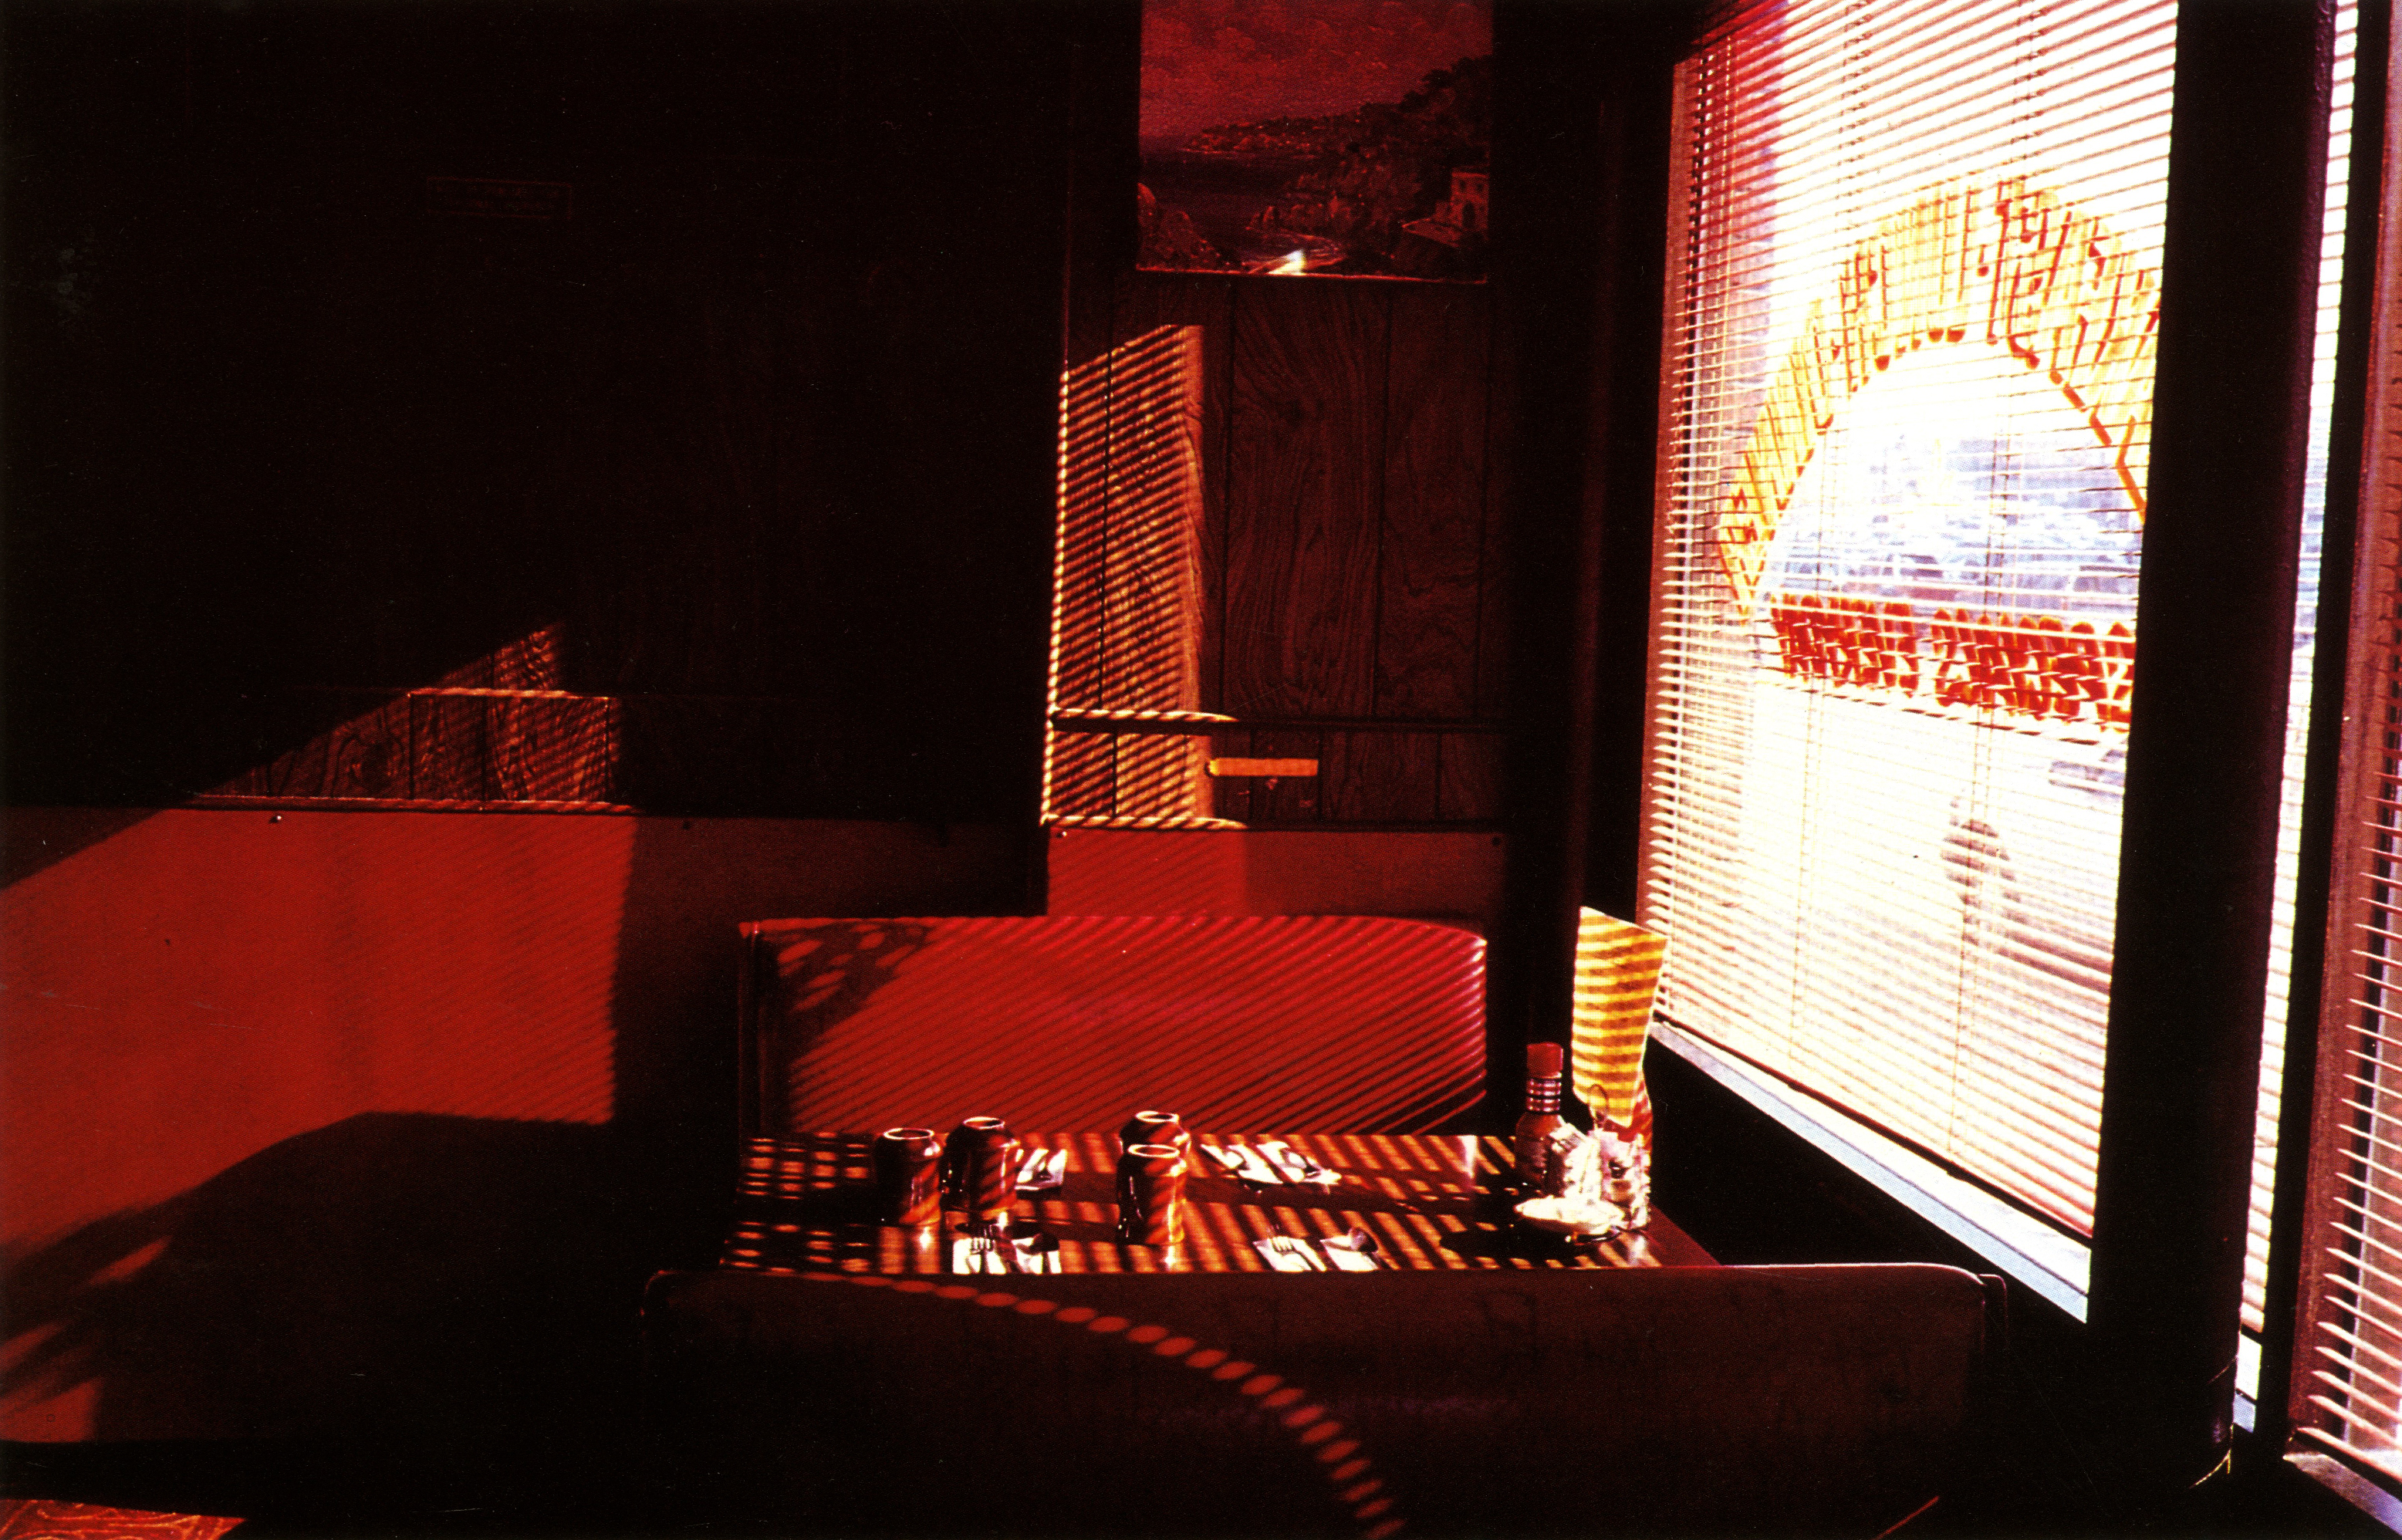 Max Forsythe, 'Red Diner', From 'Colour Prejudice'-01